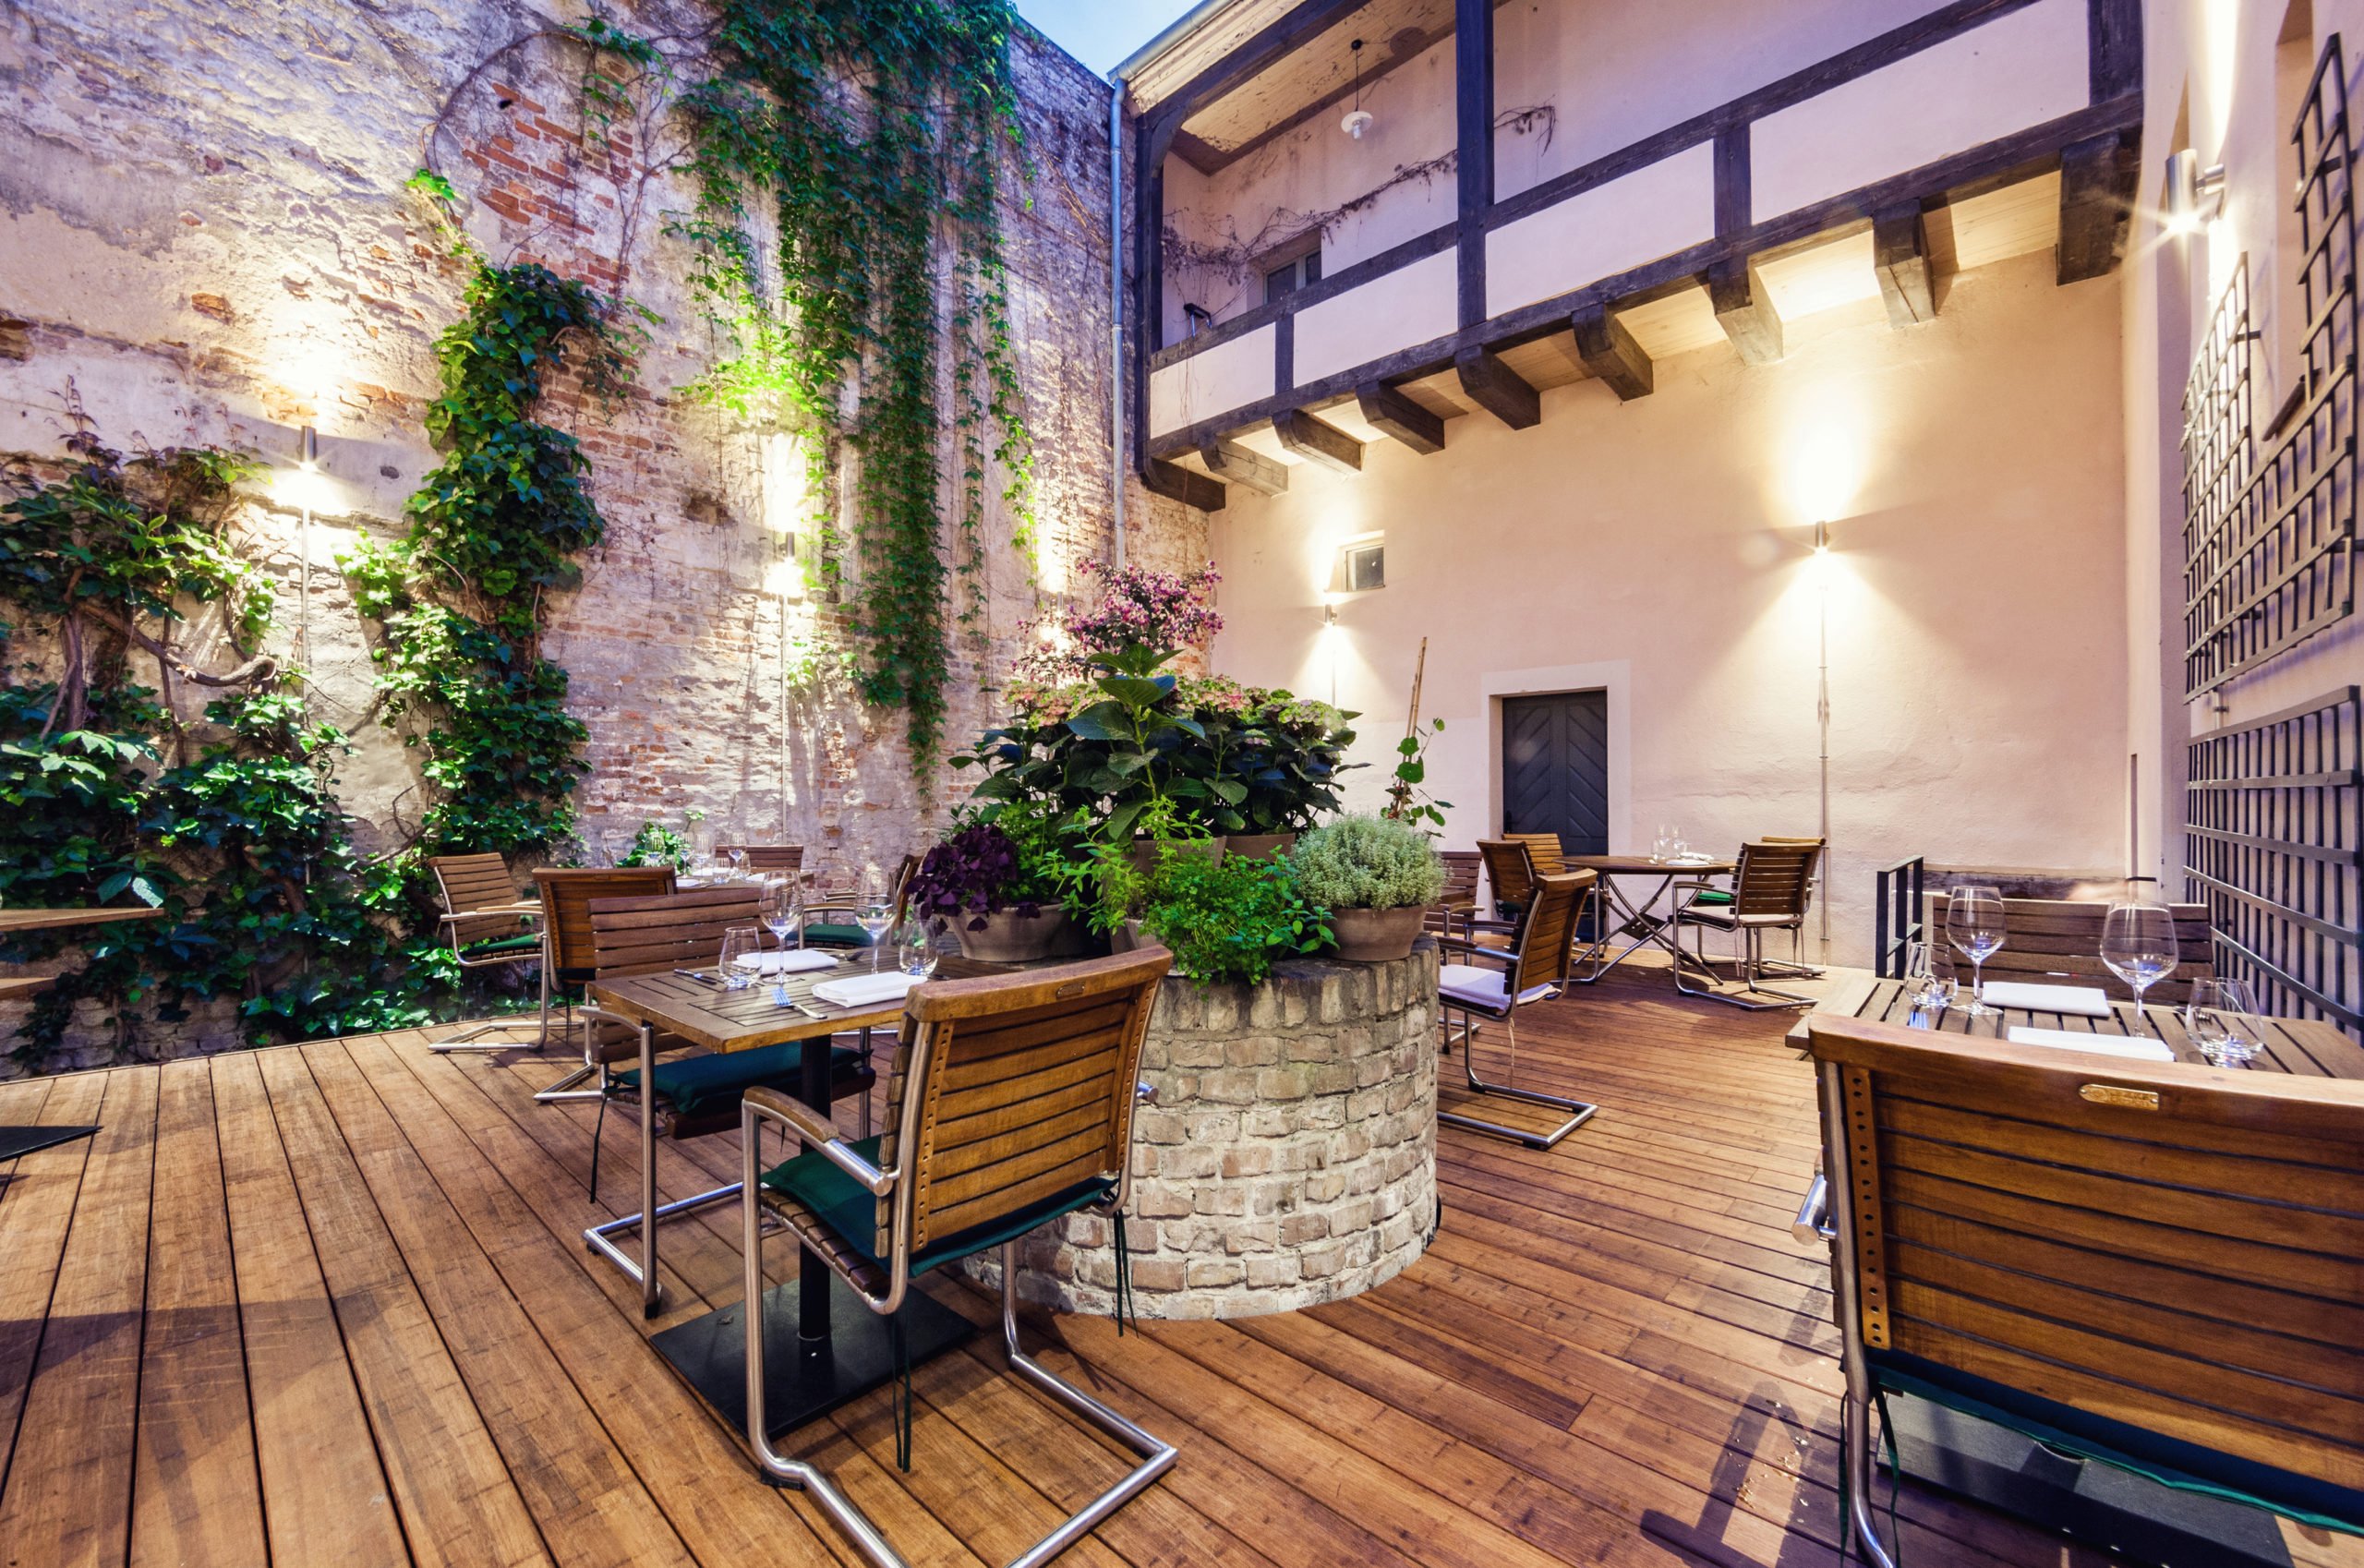 Tipps Potsdam Unweit des Museums Barberini befindet sich das lässige Sternerestaurant Kochzimmer, dessen lauschige Terrasse zu langen Abenden mit gutem Wein einlädt.